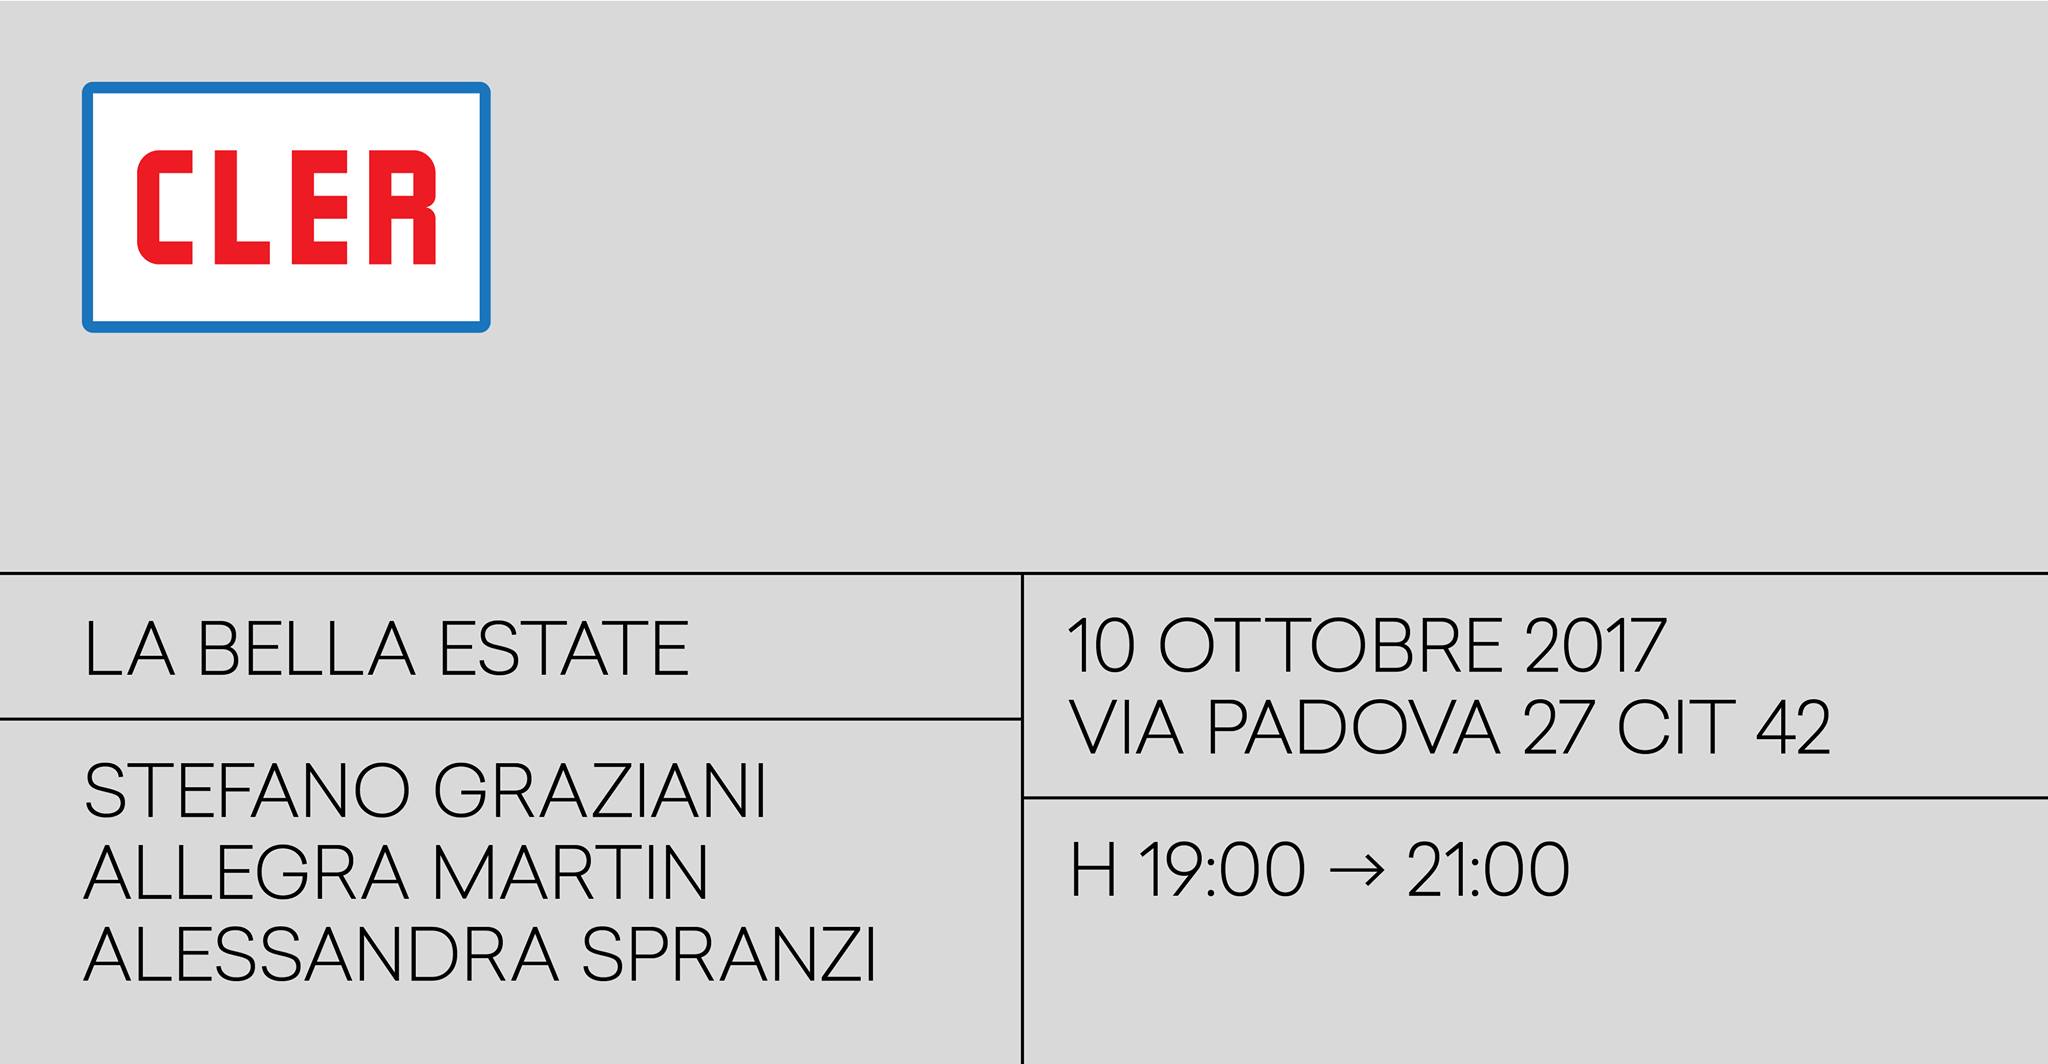 #Alessandra_Spranzi participates into the group show "La bella estate" @CLER #Milan - 